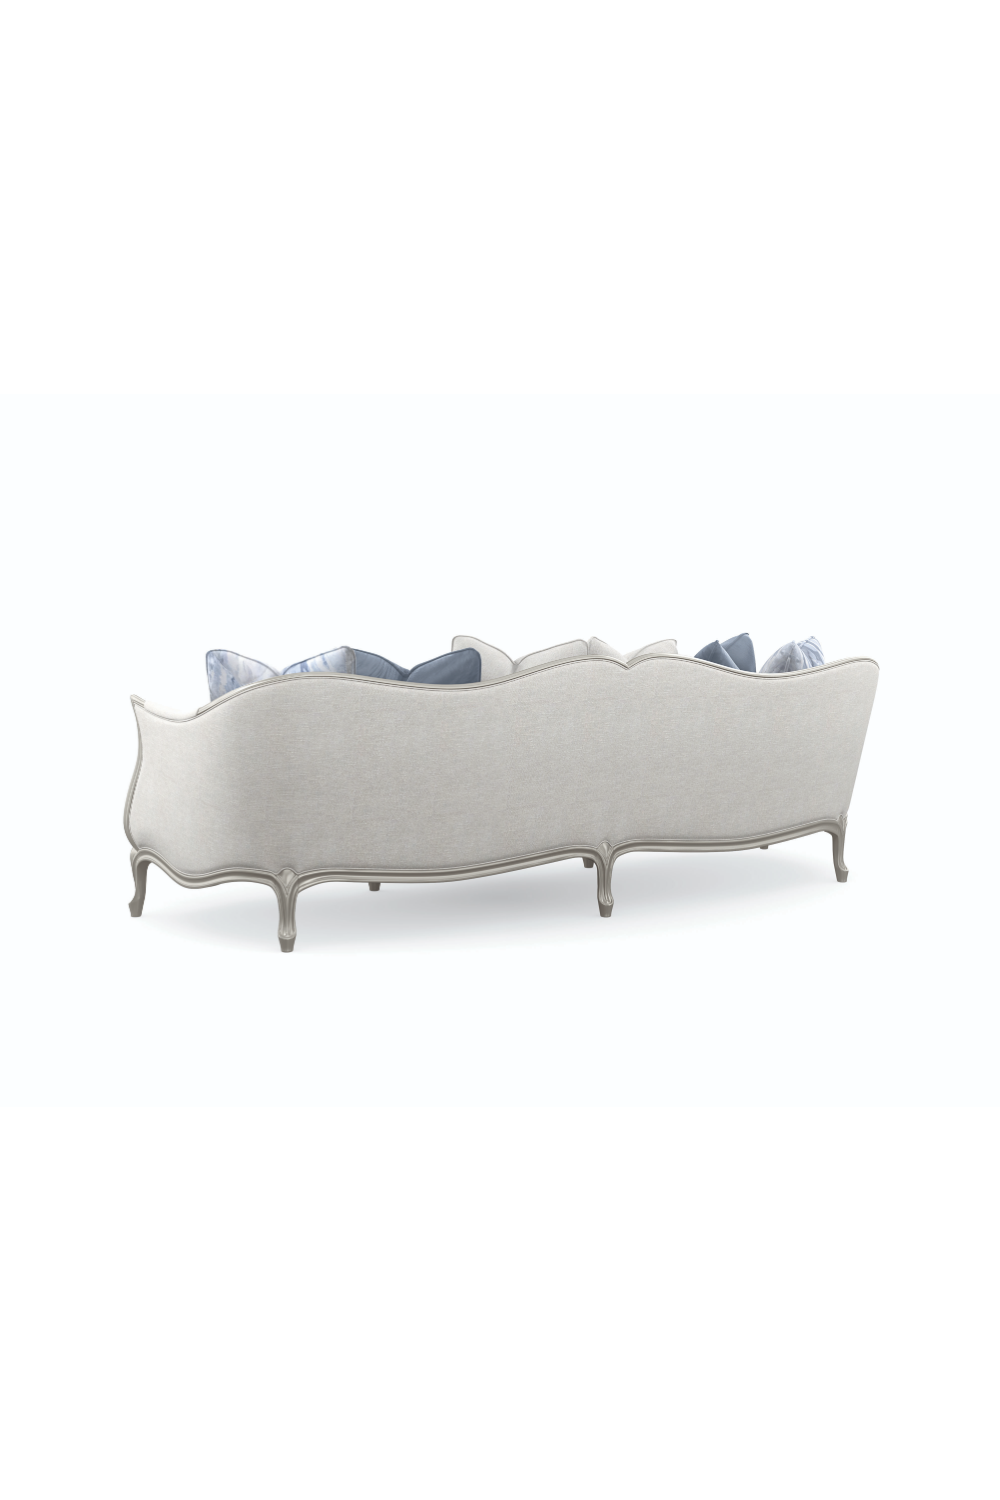 Silver Paint Sofa | Caracole Special Invitation | Oroa.com